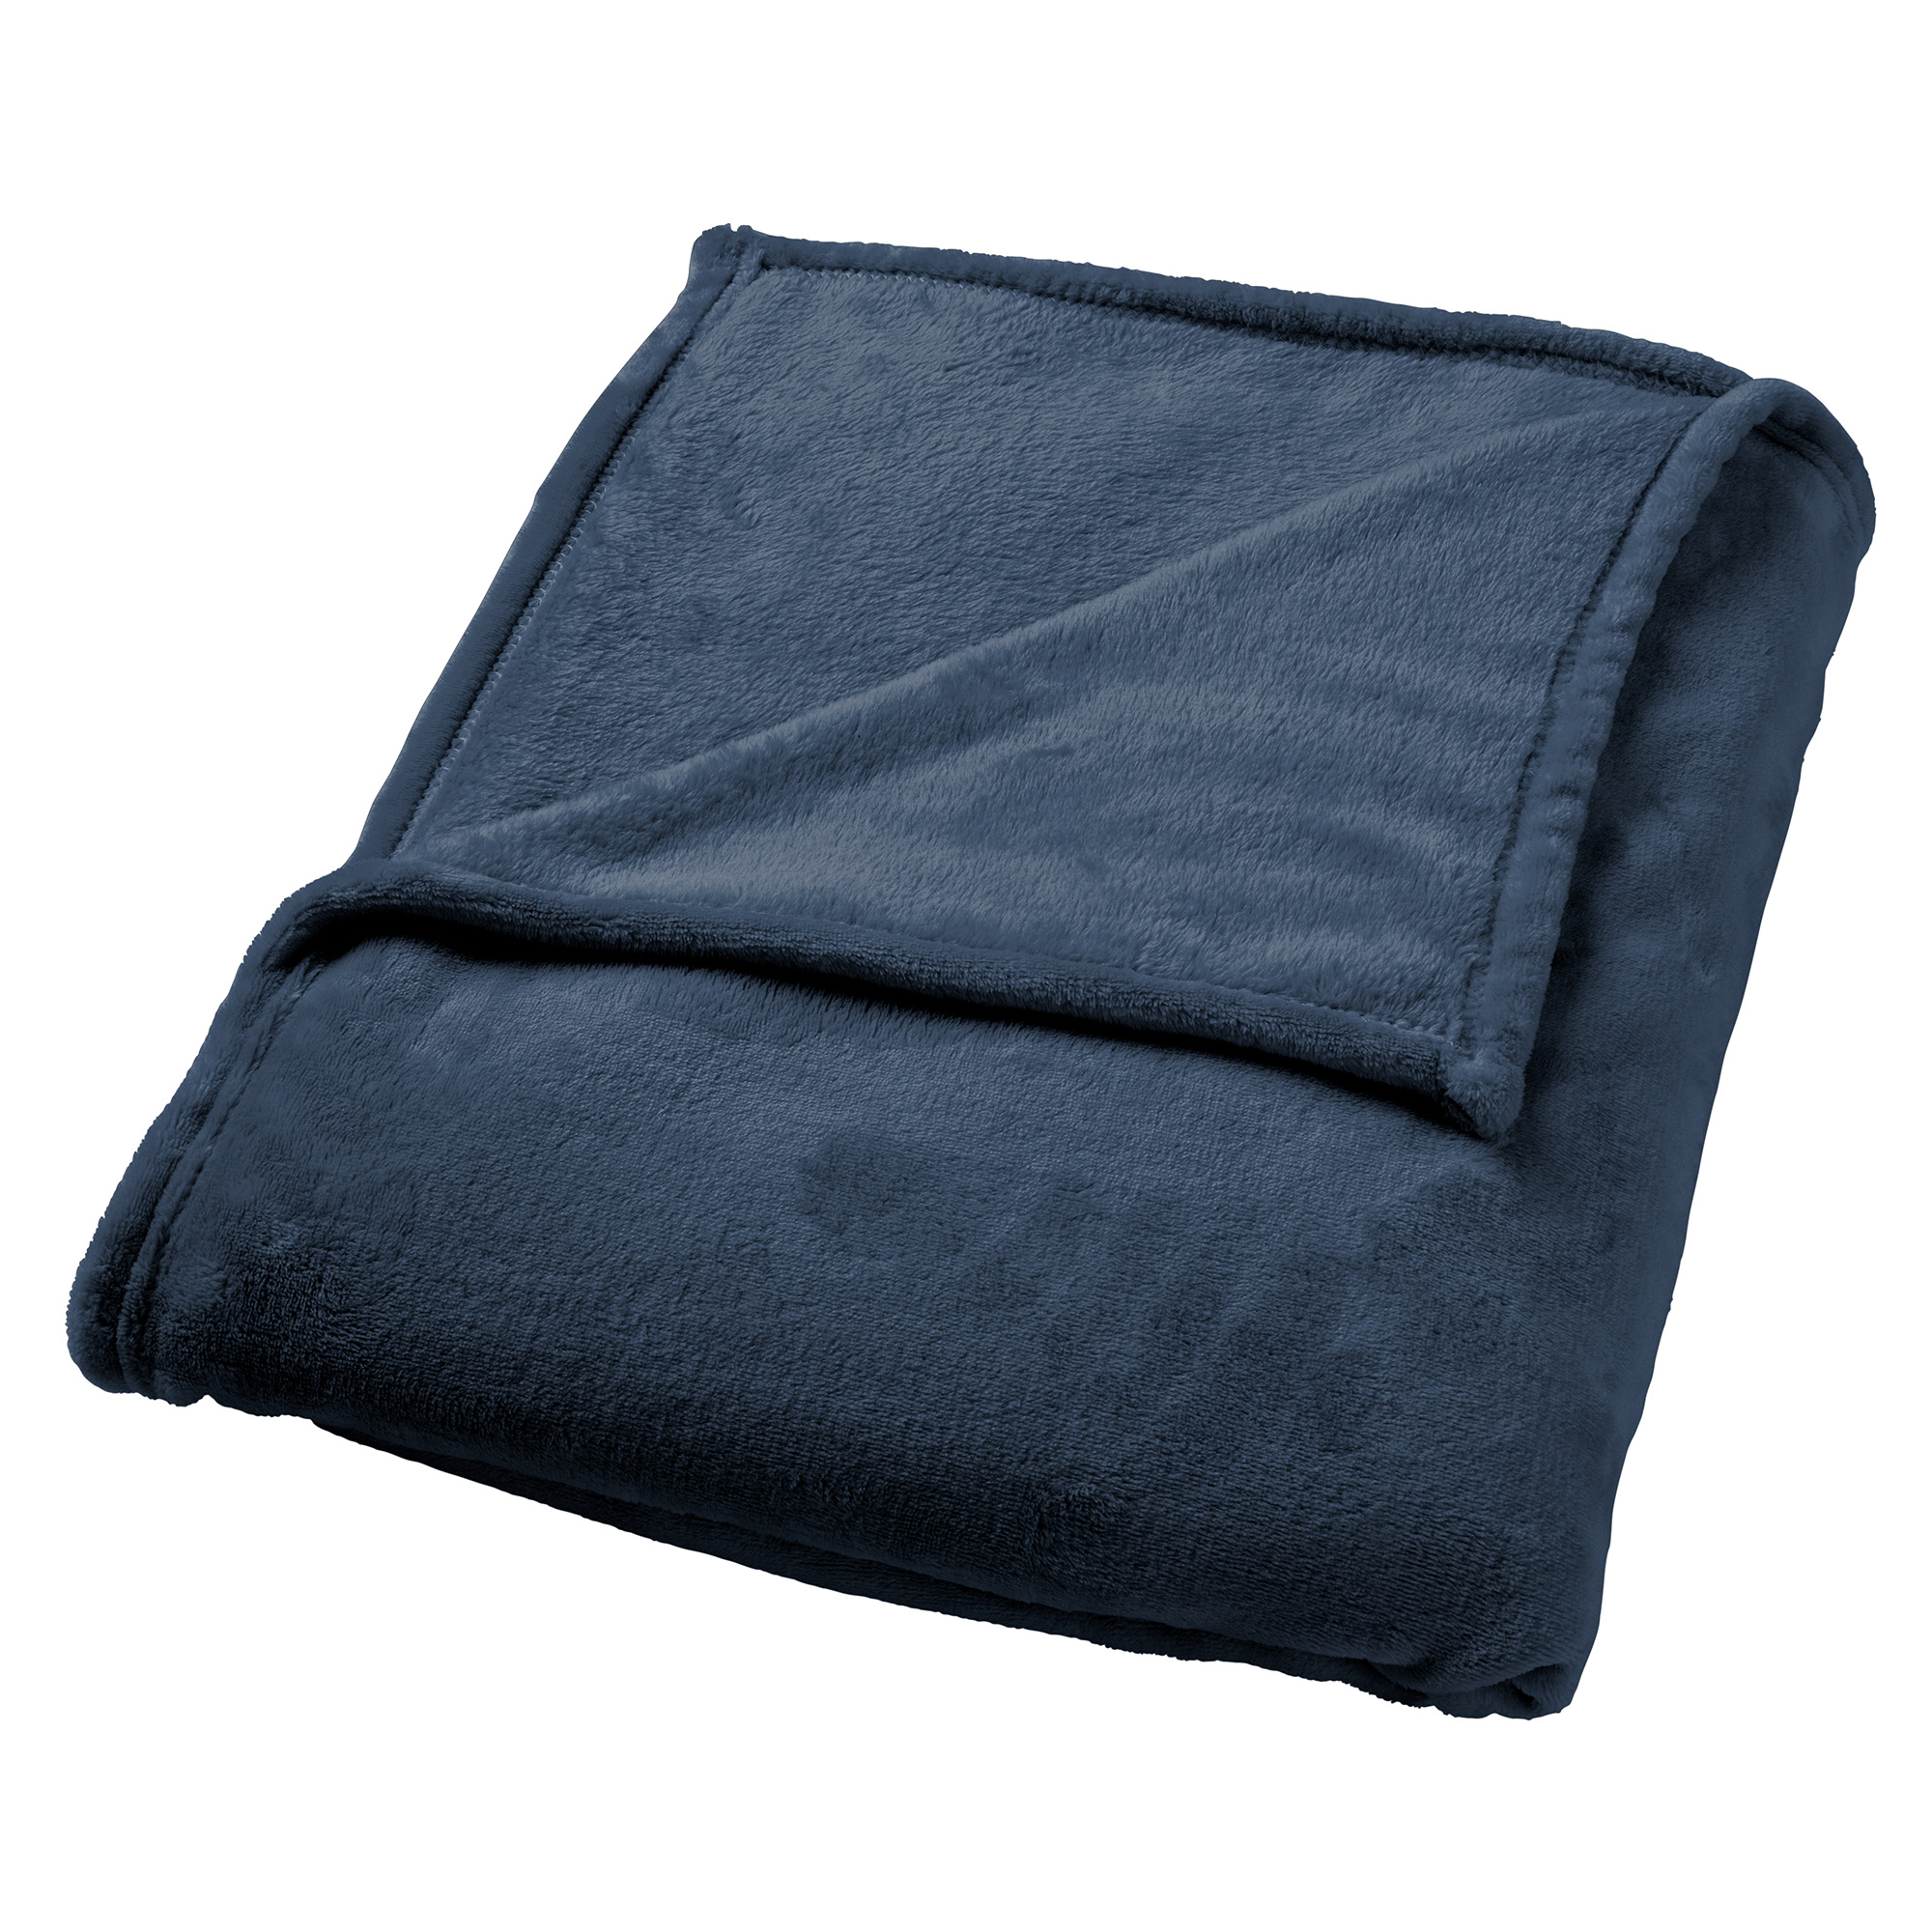 CHARLIE - Plaid flannel fleece XL - 200x220 cm - Insignia Blue - blauw